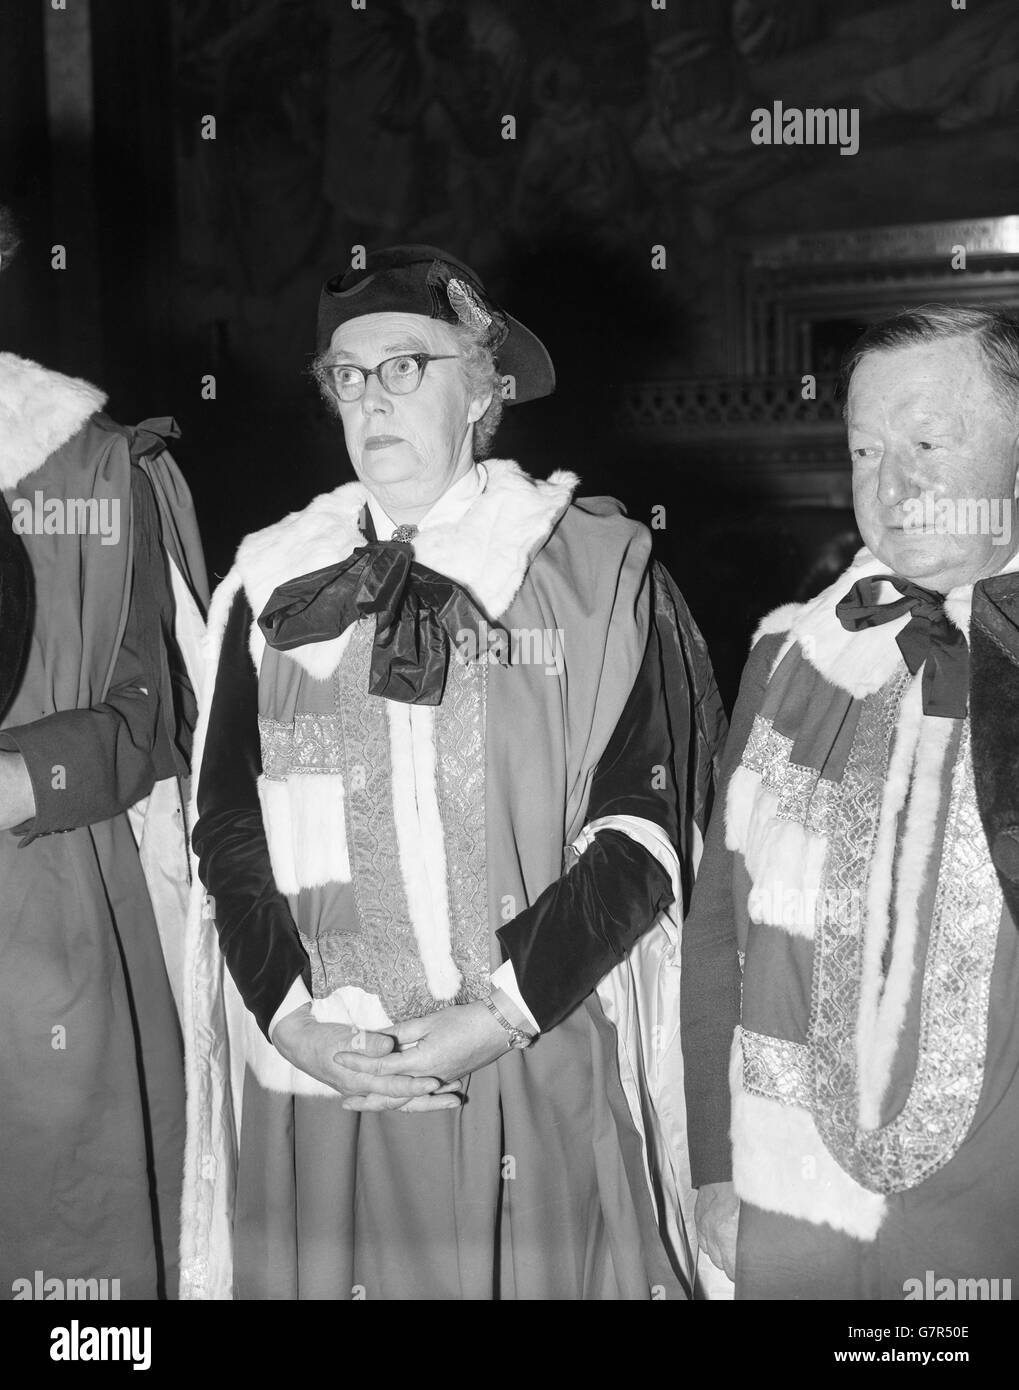 Baroness Wootton von Abinger, eine der neuen Lebensspeeresses, in ihren Roben im House of Lords abgebildet, wo sie den Eid bei einer besonderen Sitzung ablegte. Lady Wootton, früher Frau Barbara Wootton, ist eine der ersten 14 Lebensgenossen und Peeresses, die geschaffen wurden. Sie ist 60 Jahre alt und war zuvor Professorin für Sozialwissenschaften an der University of London. Als prominente Sozialistin war sie Mitglied des BBC Board of Governors und einer Royal Commission. Stockfoto